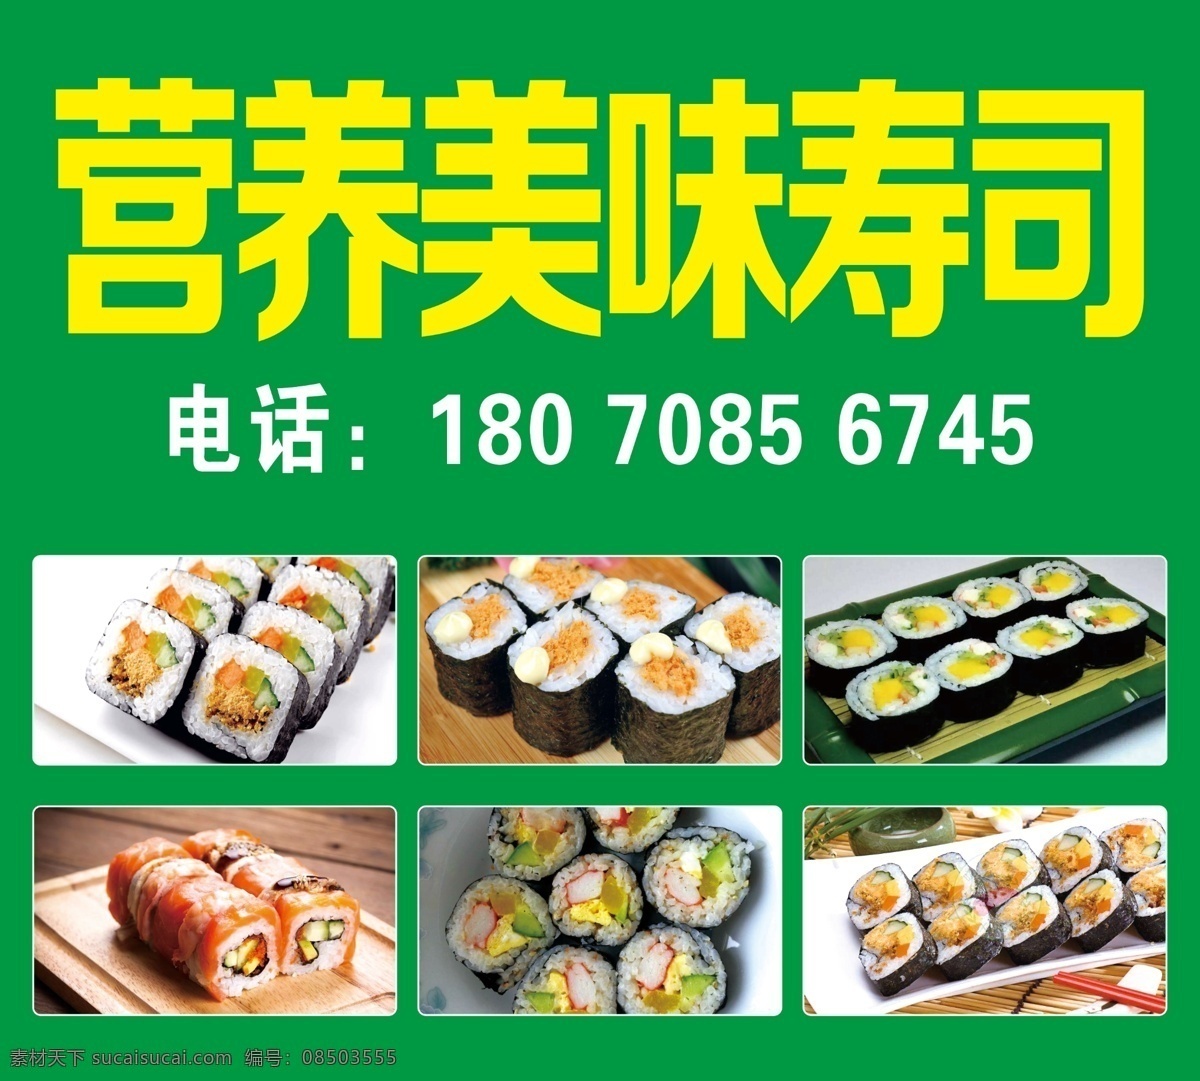 寿司图片 寿司 广告 招牌 寿司招牌